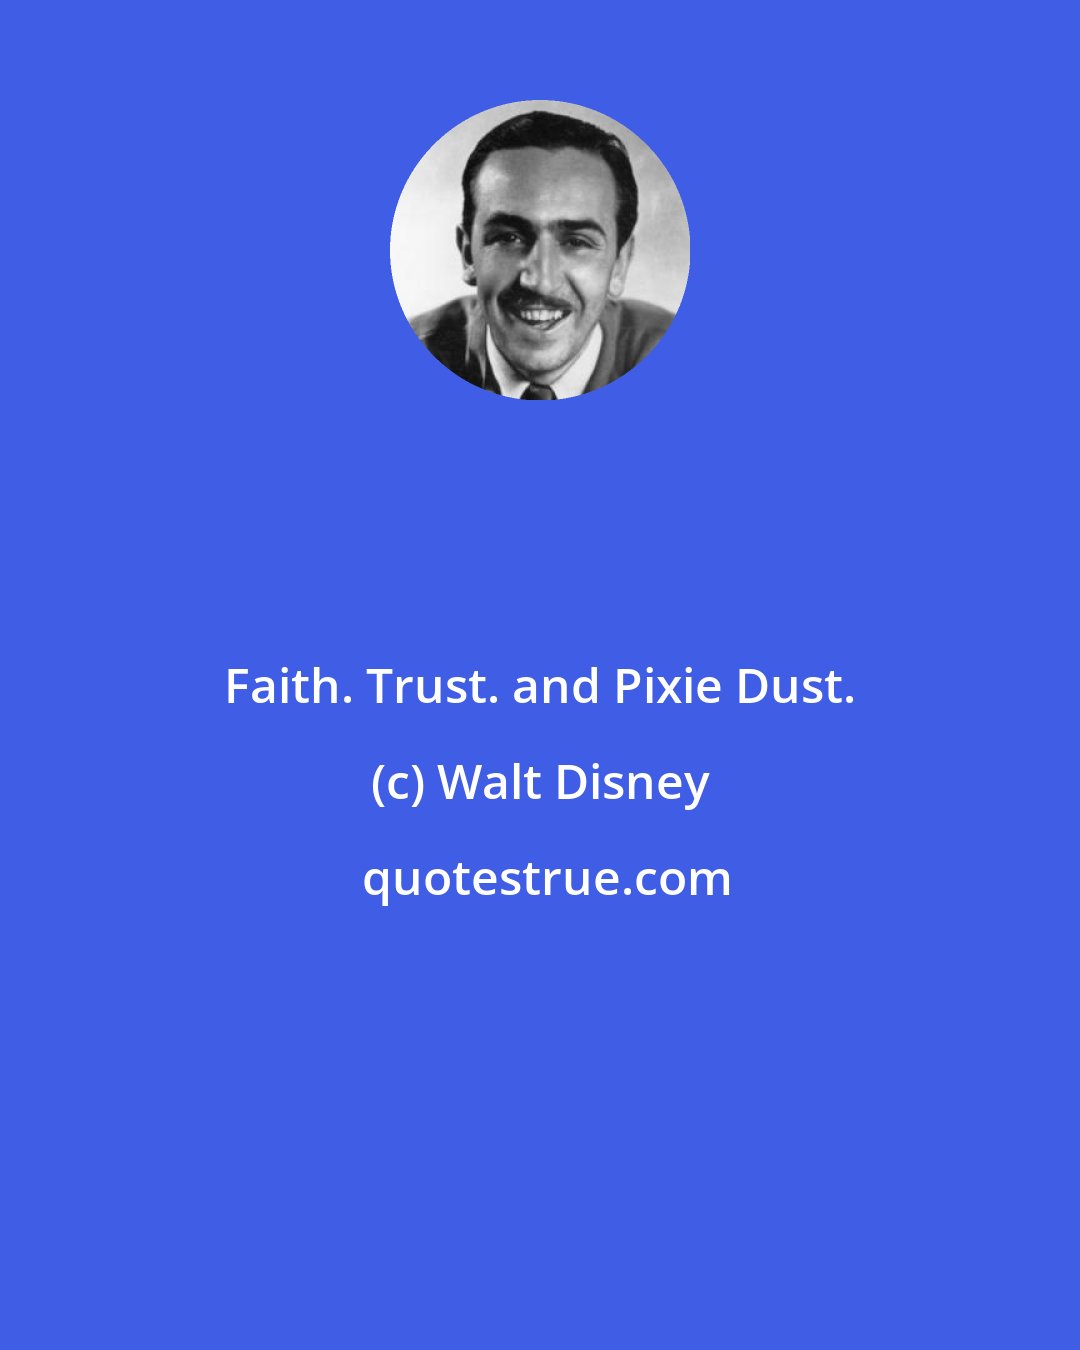 Walt Disney: Faith. Trust. and Pixie Dust.